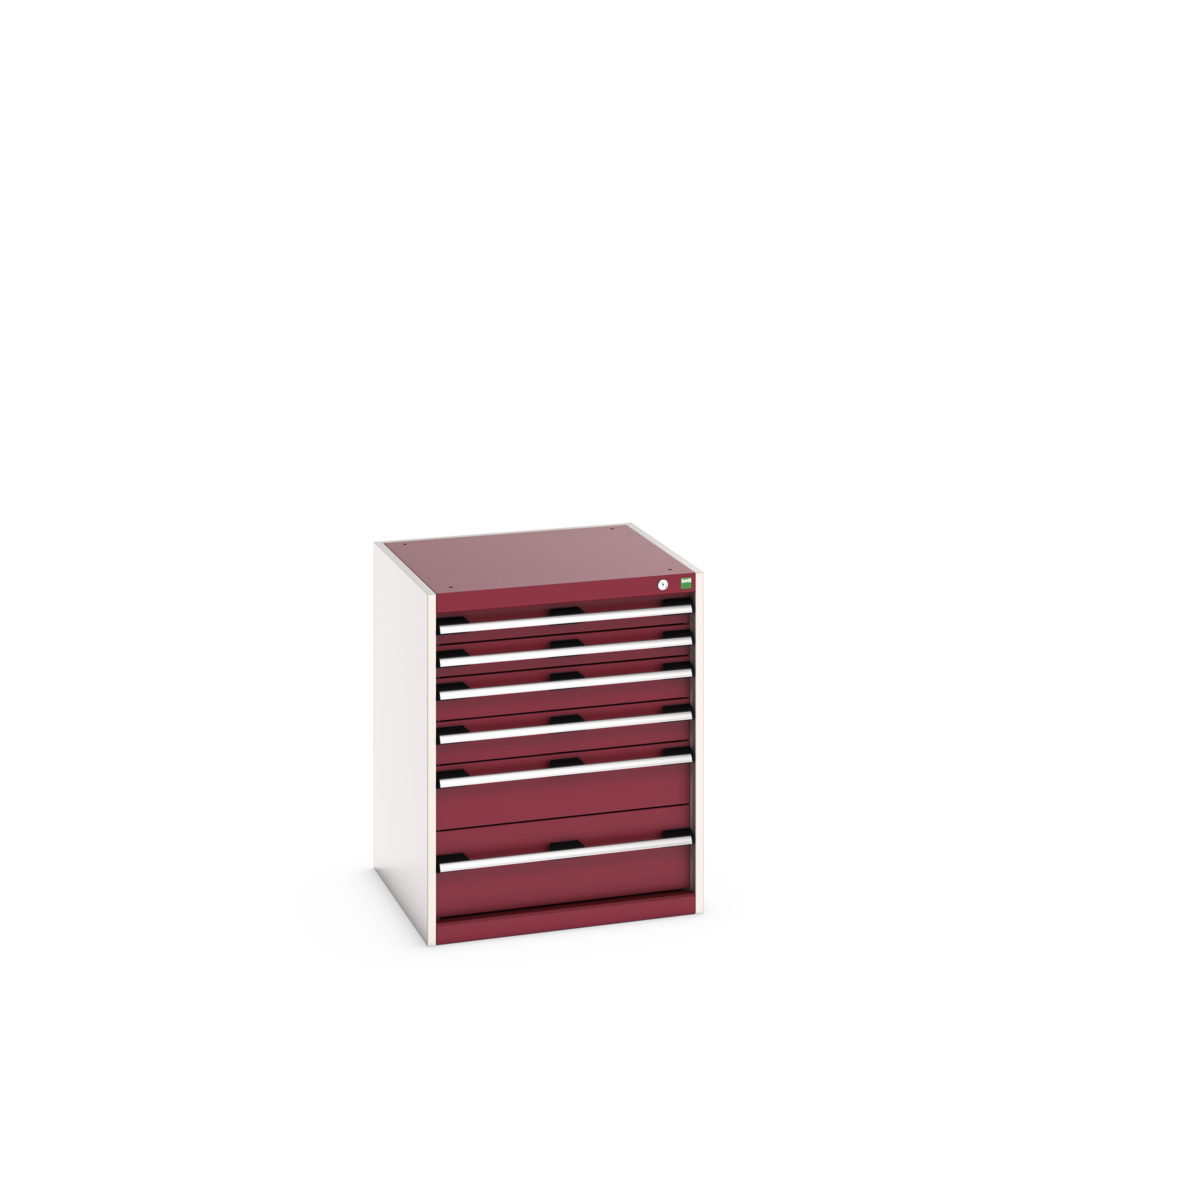 40019039.24V - cubio drawer cabinet